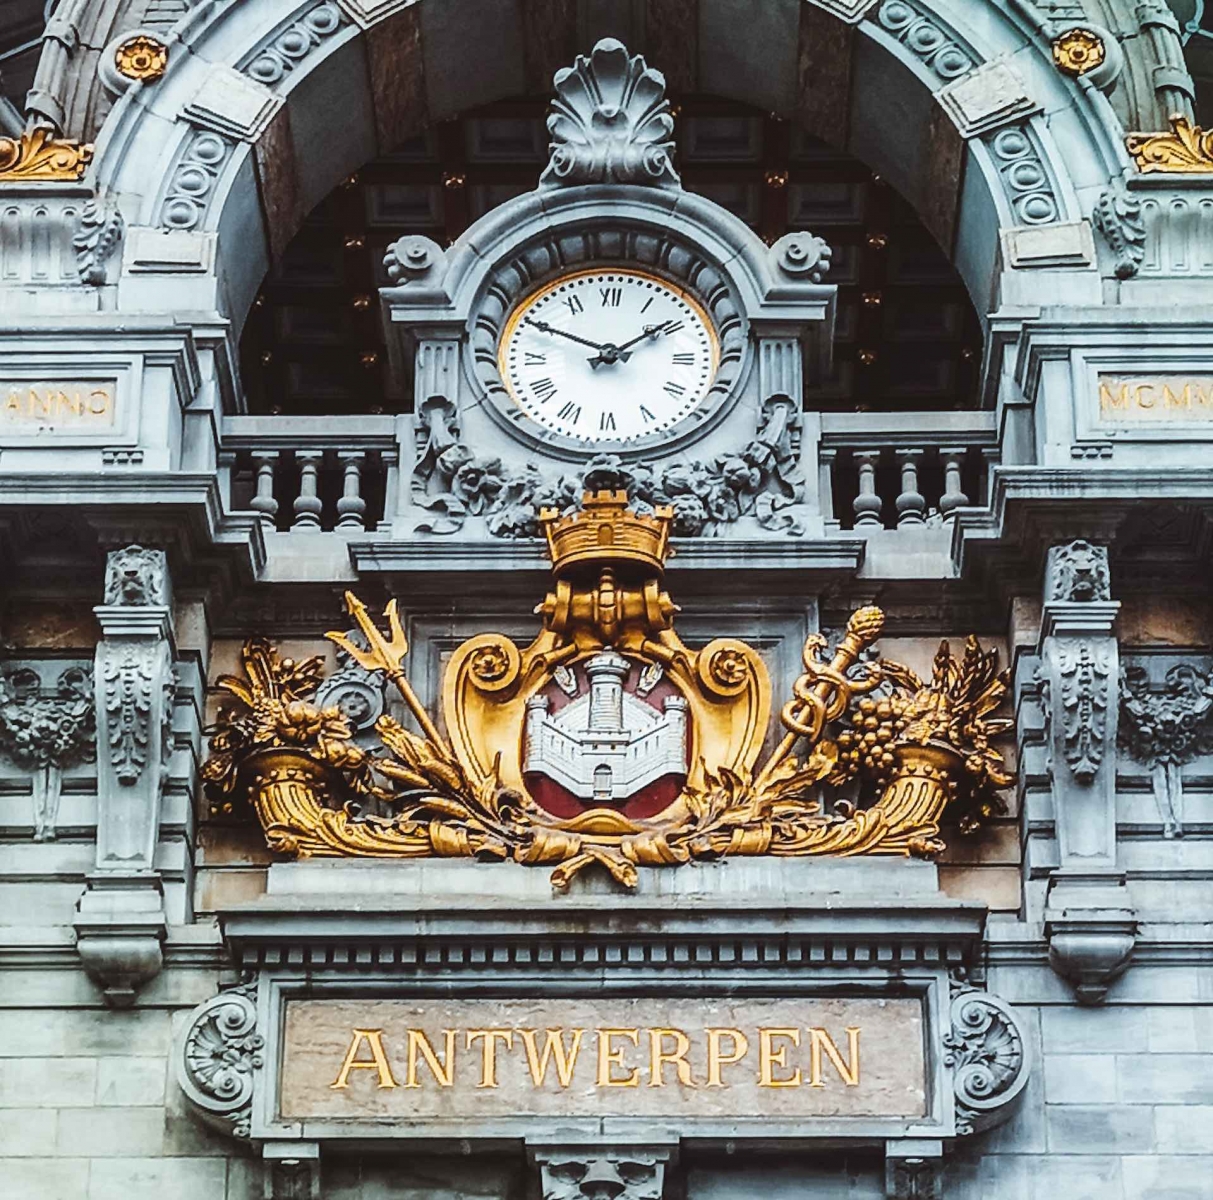 Station Antwerpen-Centraal, Koningin Astridplein, Antwerp, Belgium